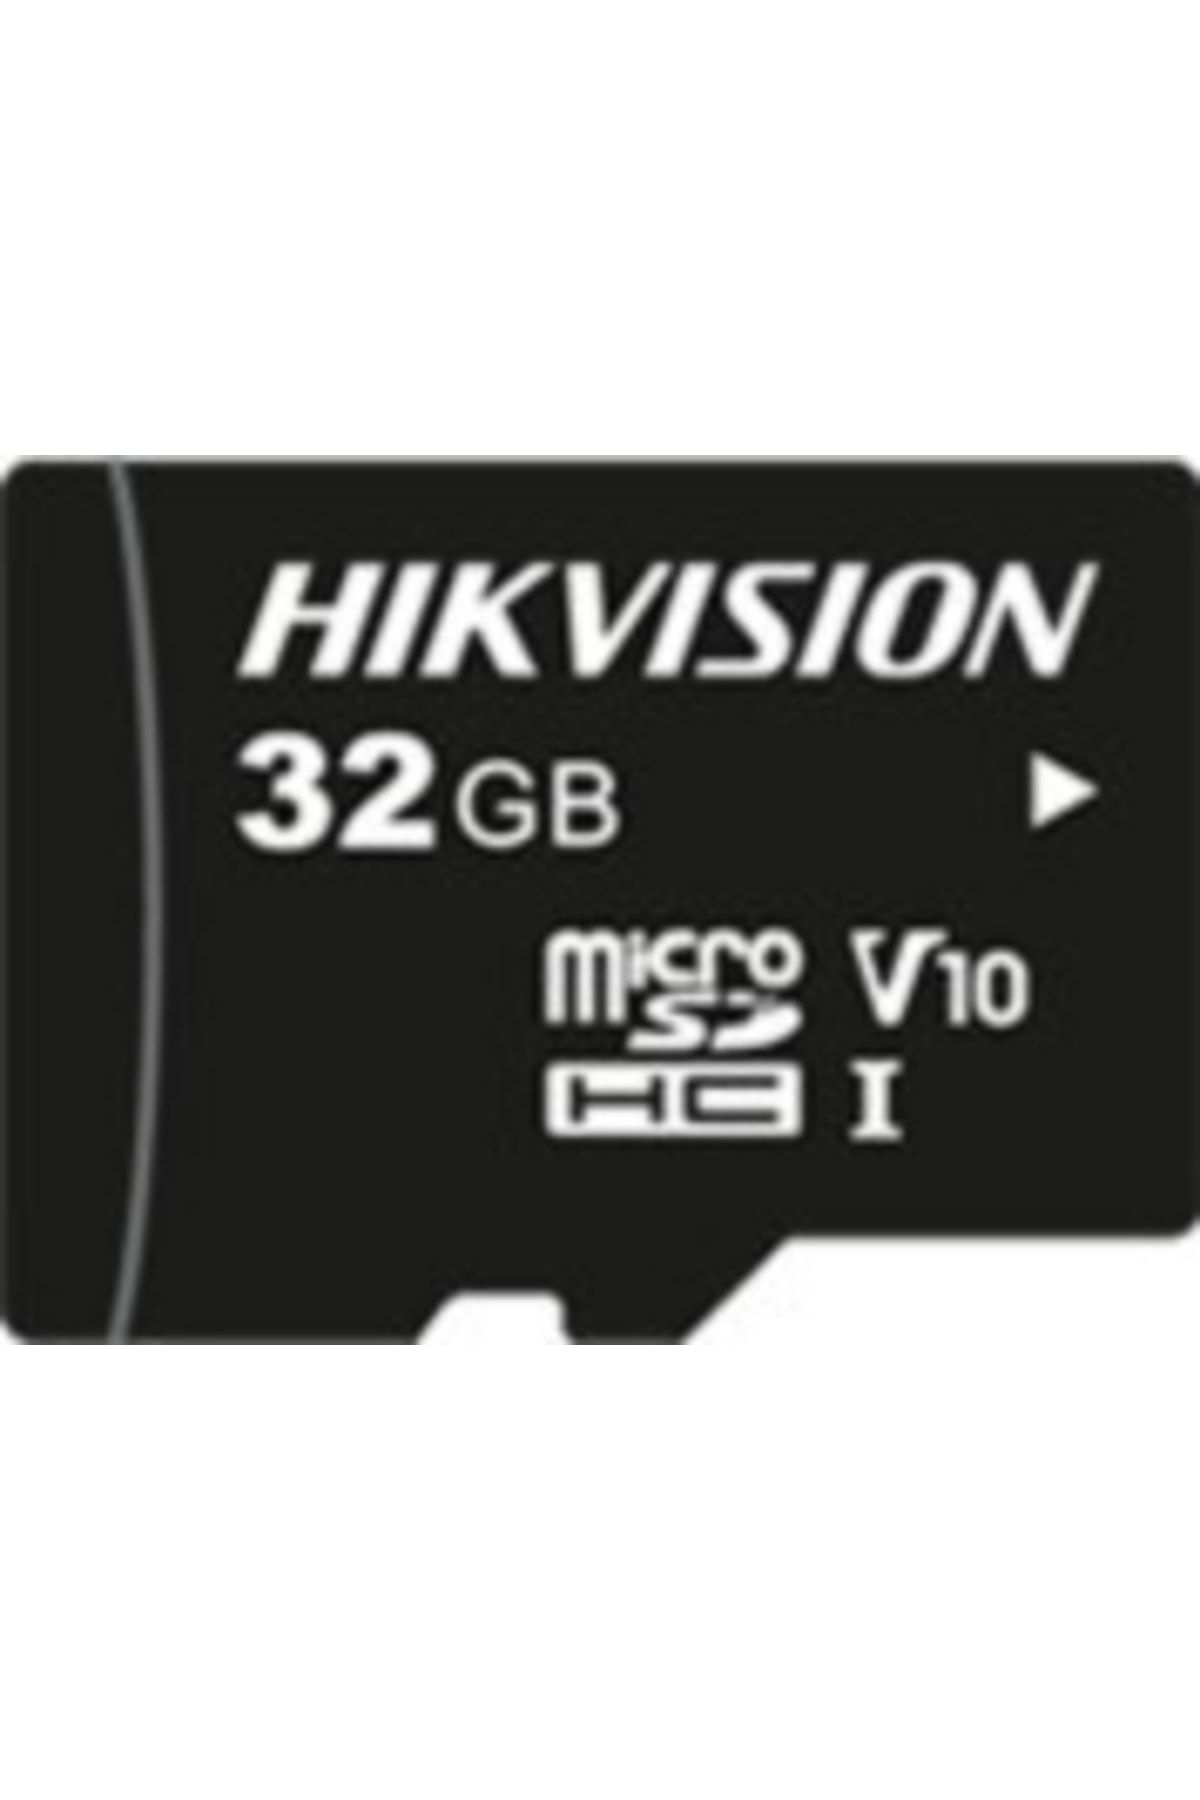 Genel Markalar Hs-tf-l2-32g 32gb Microsdhc Class10 U1 V10 95-25mbs Tlc 7-24 Cctv Hafıza Kartı